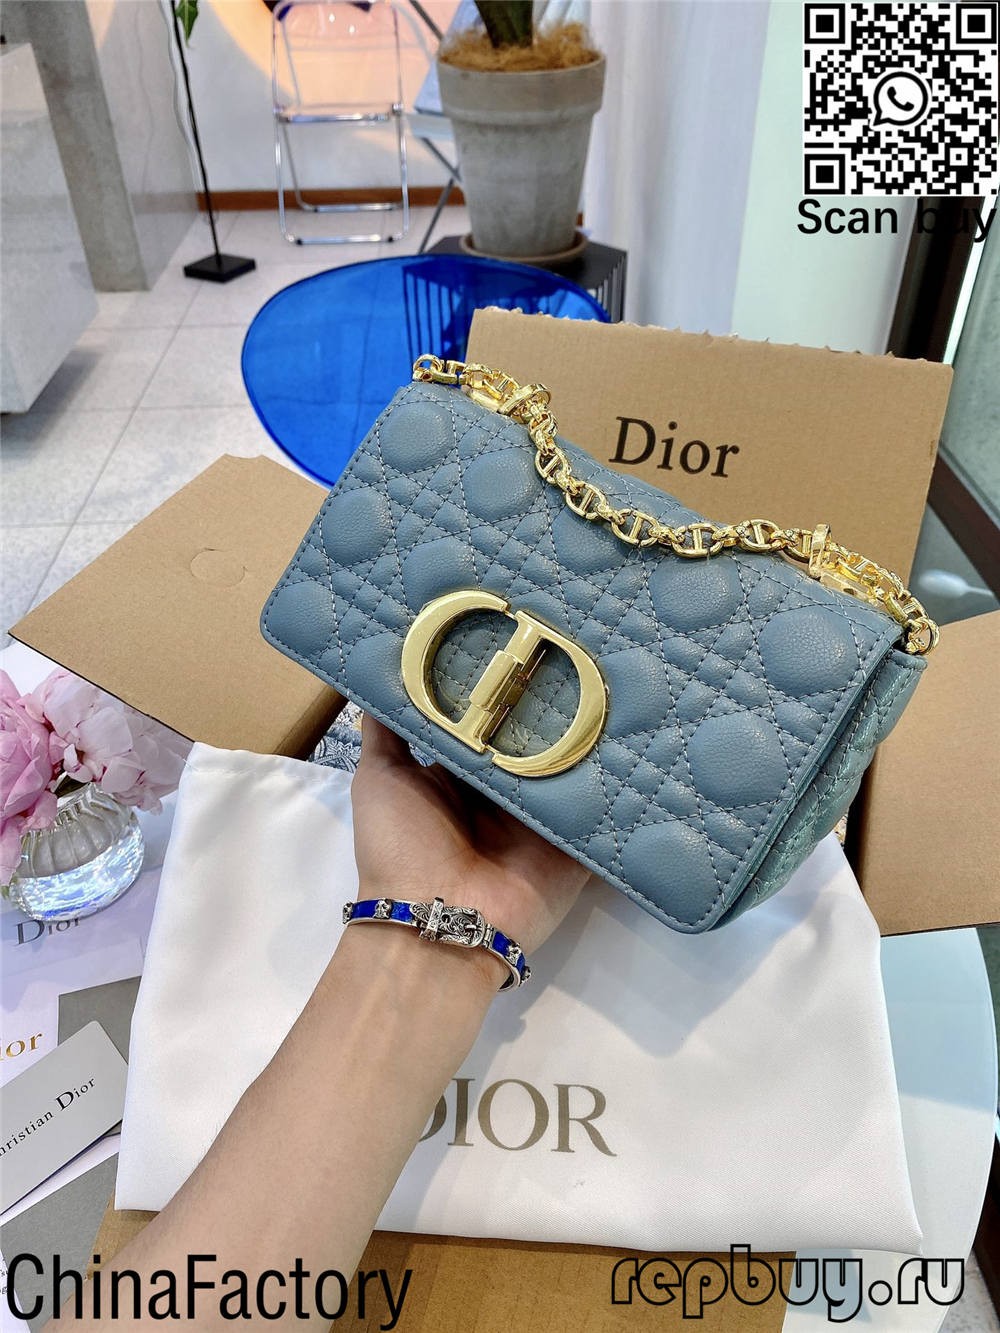 Diorille kannattaa ostaa 12 replikalaukkua (päivitetty 2022) - Paras laatu Fake Louis Vuitton Bag -verkkokauppa, Replica designer bag ru